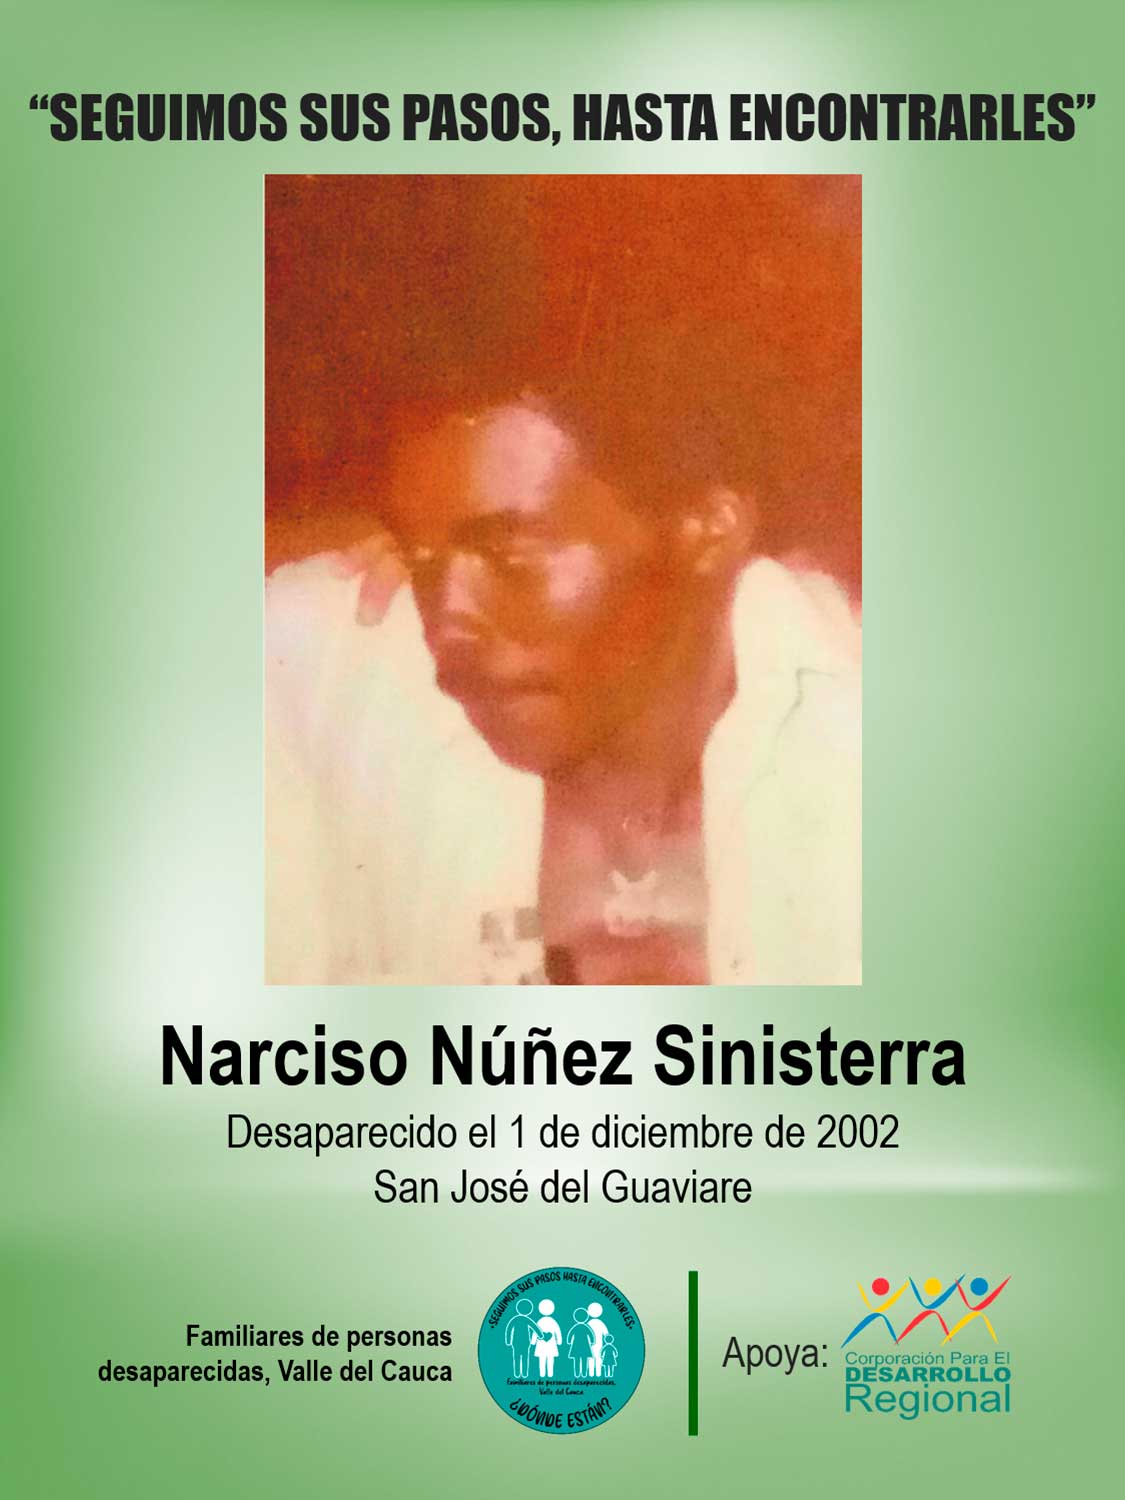 Narciso Núñez Sinisterra